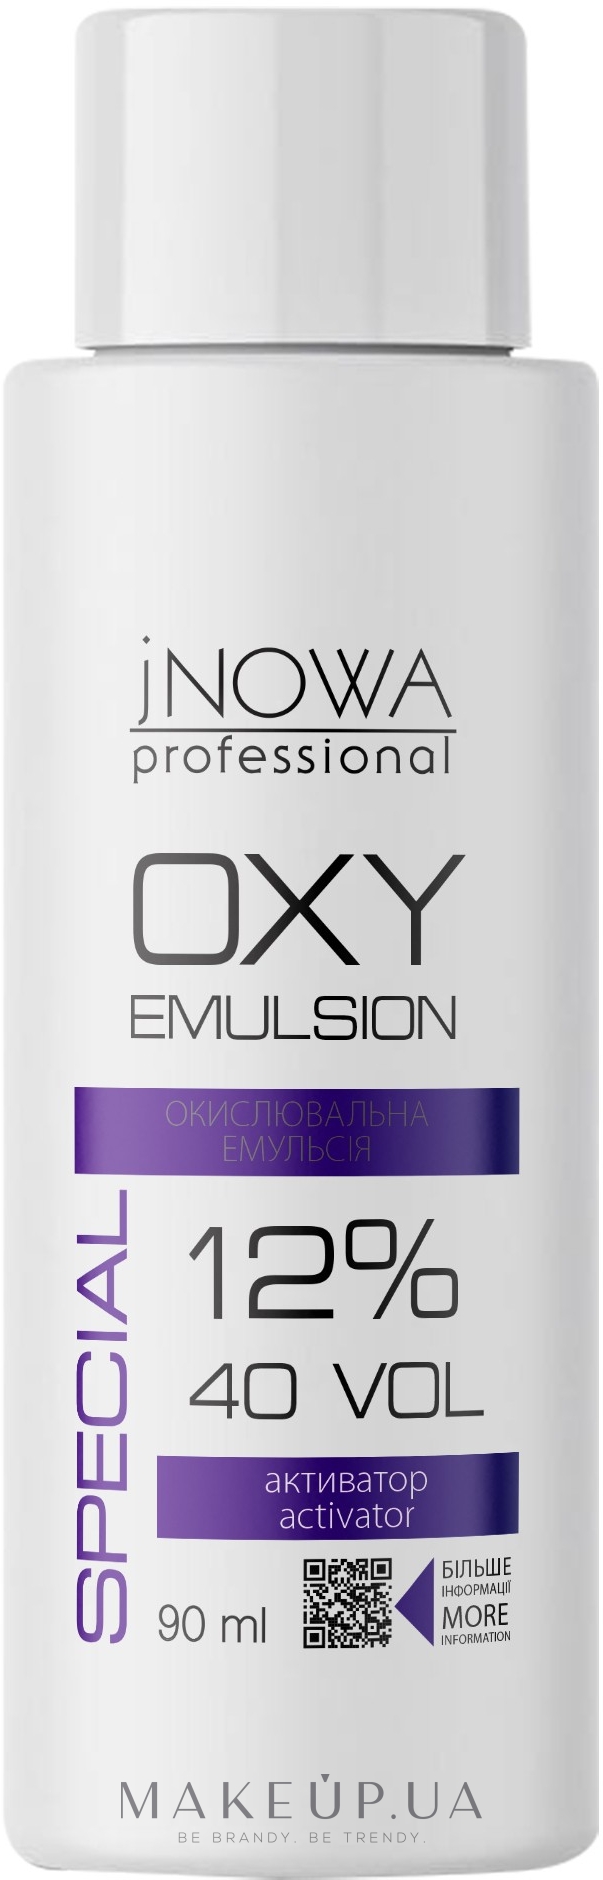 Окислювальна емульсія, 12 % - jNOWA Professional OXY 12% (40 vol) — фото 90ml